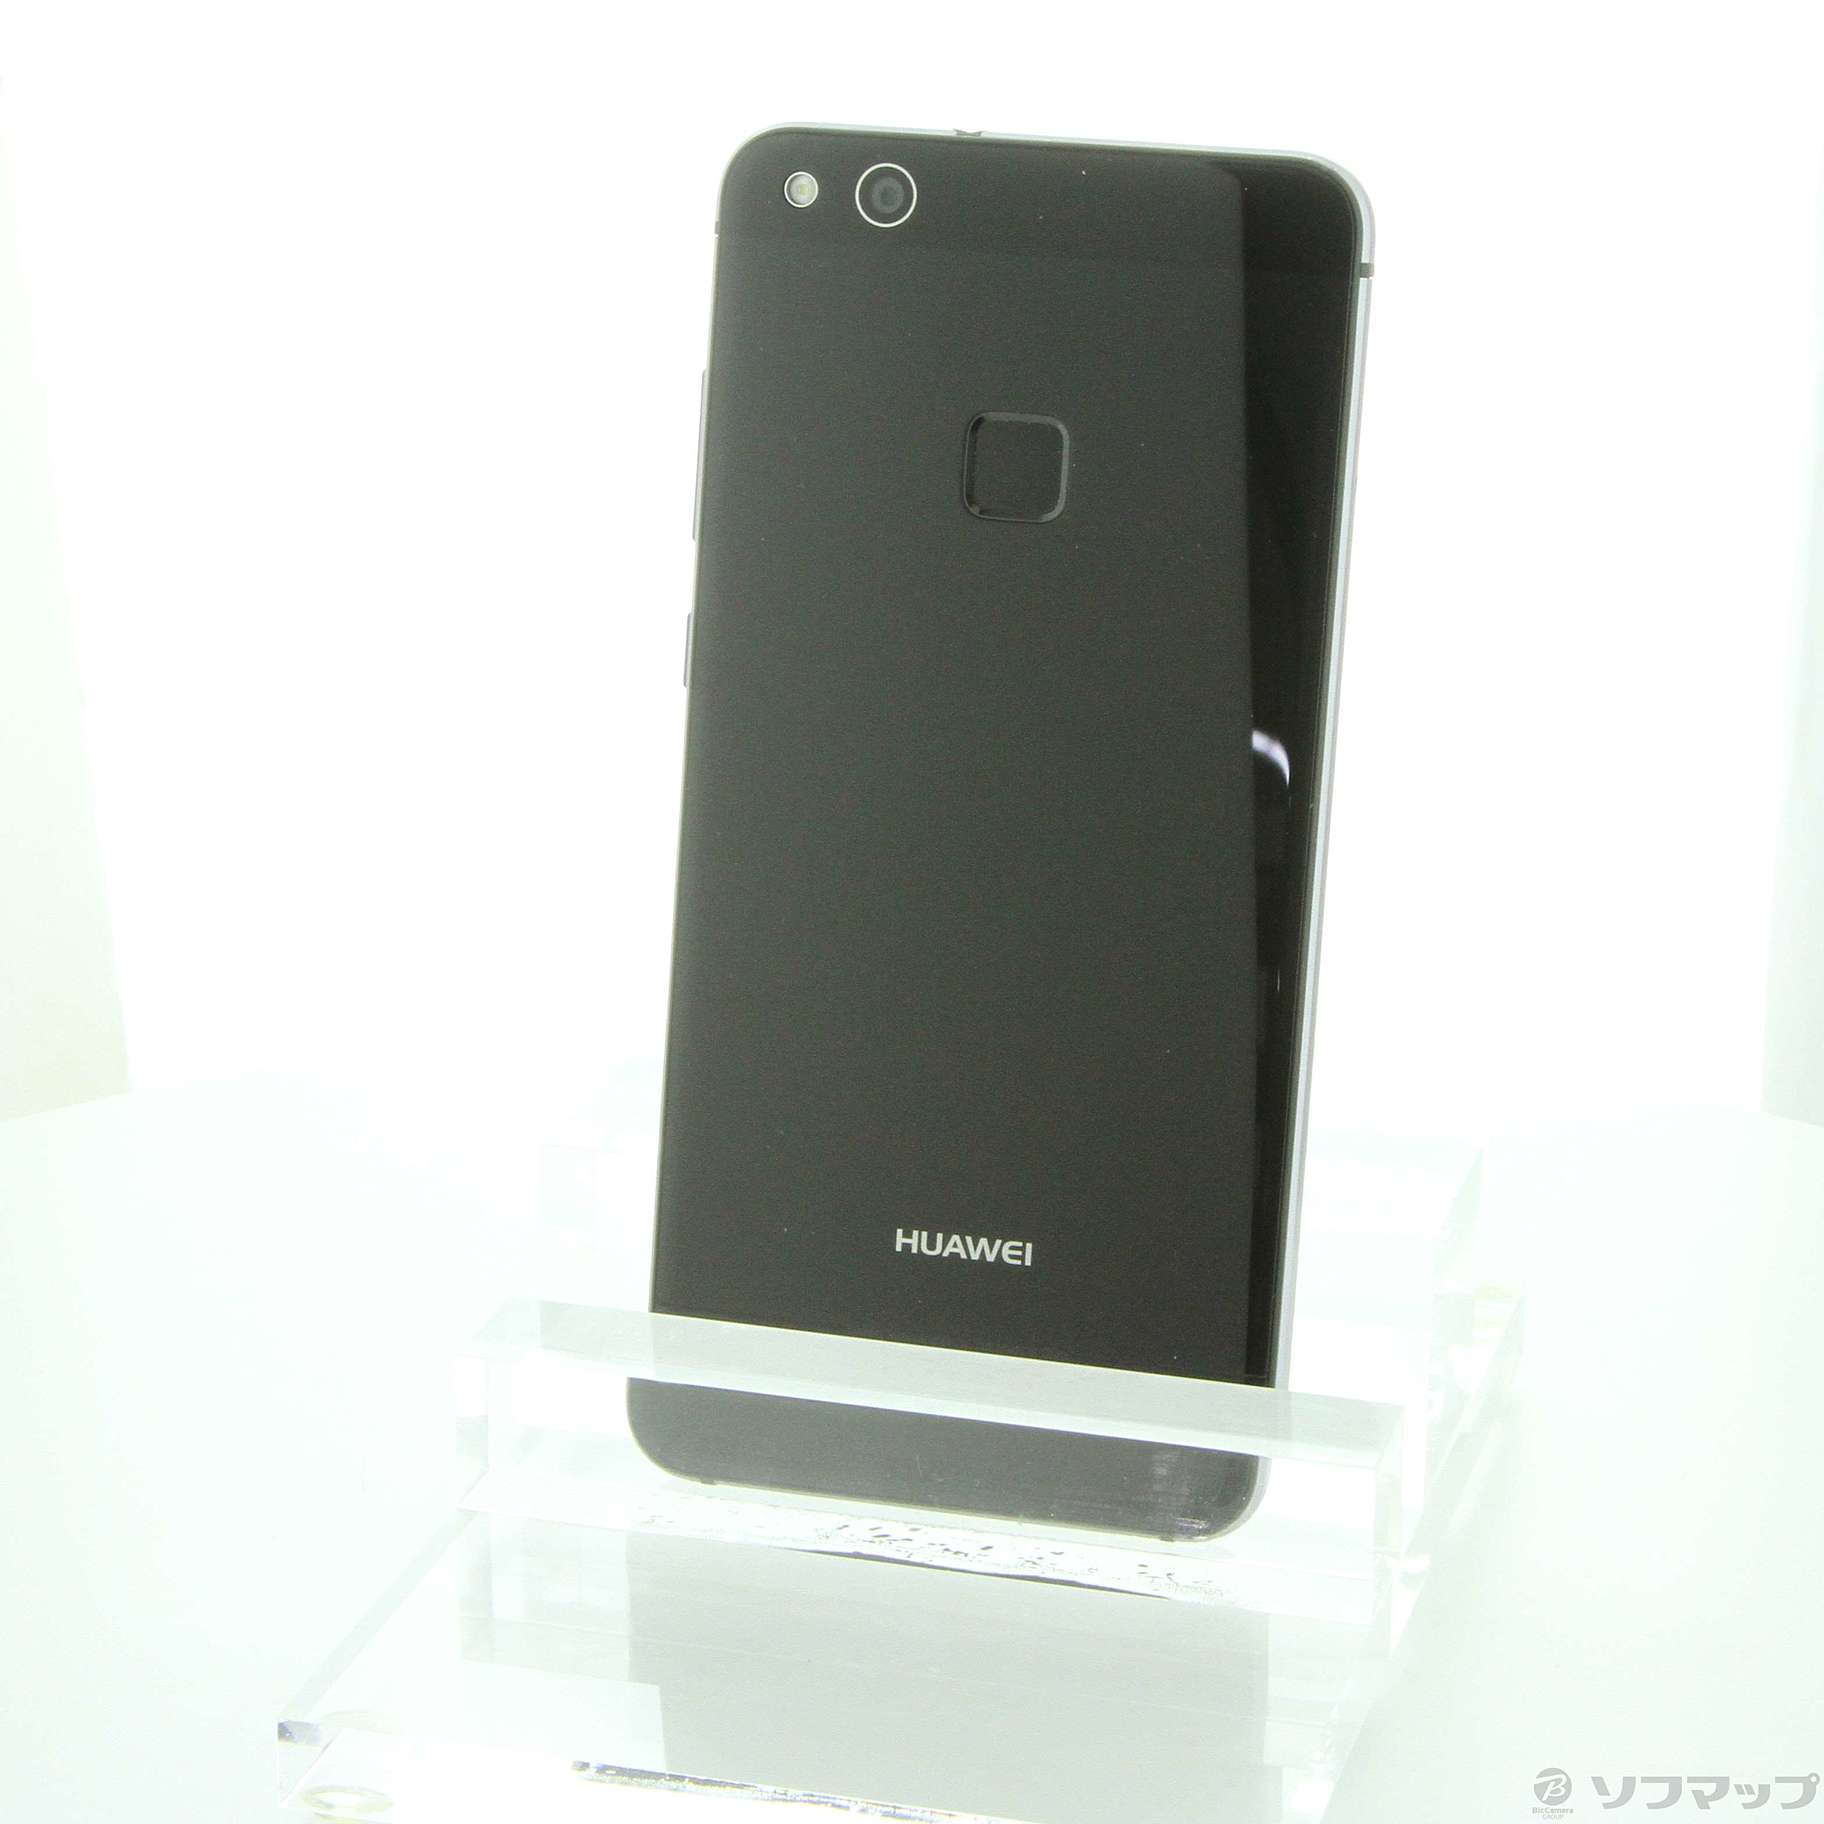 【新品未開封】Huawei P10 lite ブラック 32GB【SIMフリー】商品状態新品未開封品です